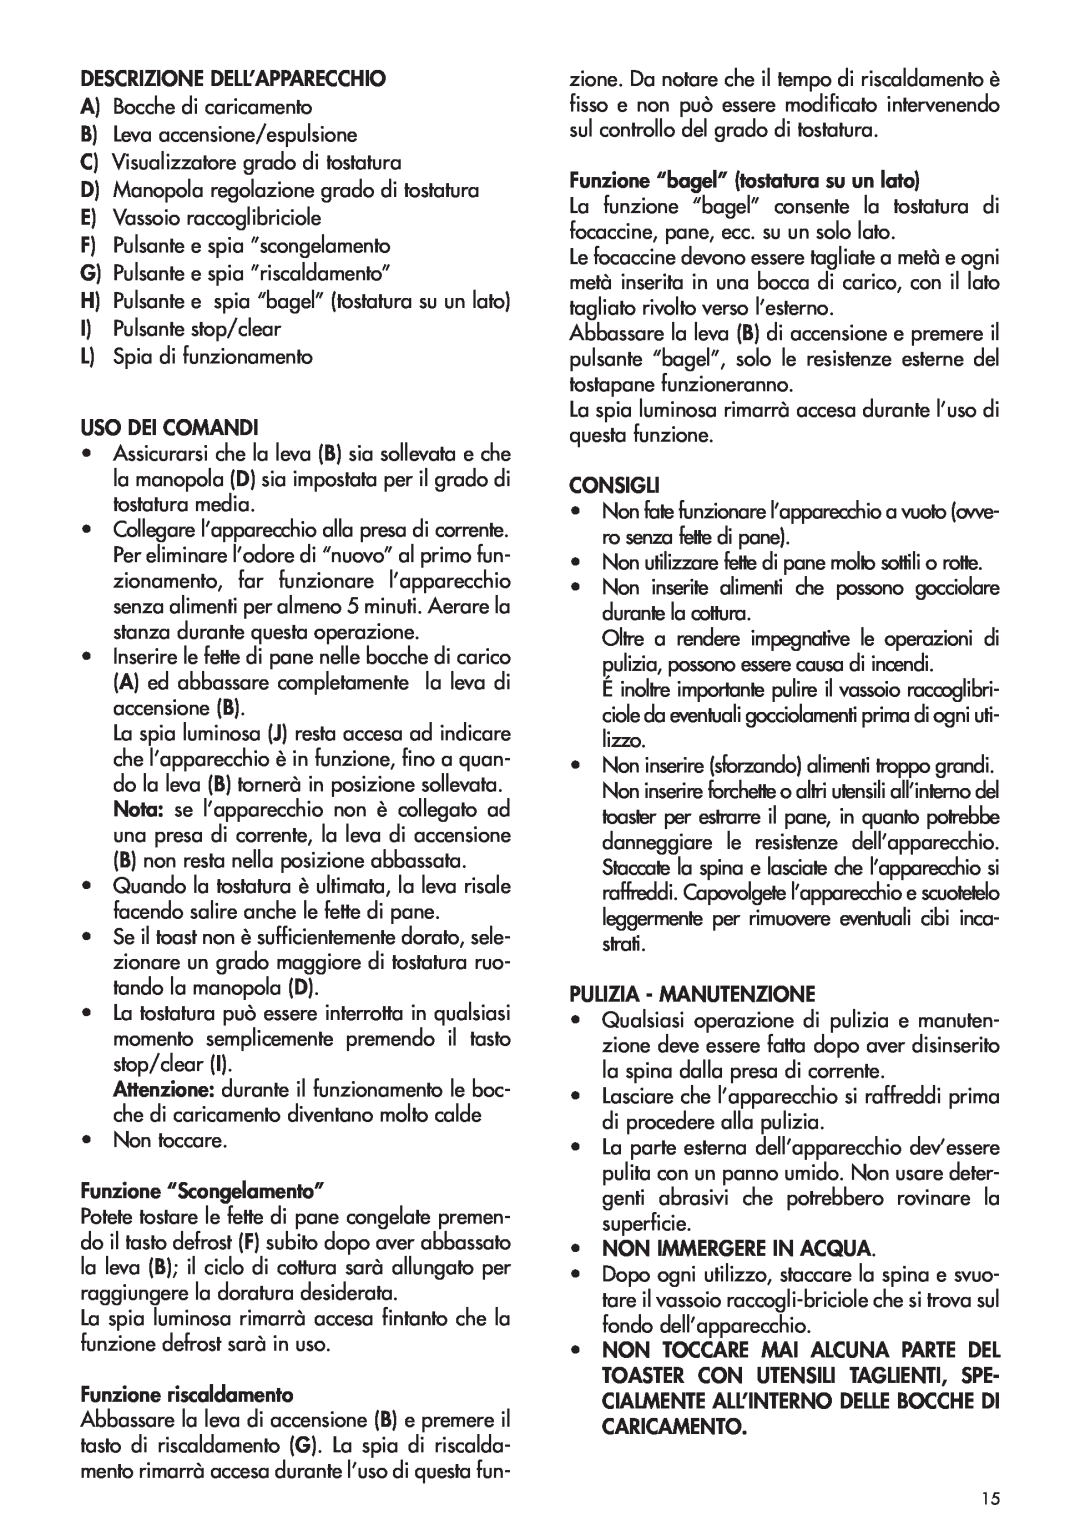 DeLonghi CTH2003B, CTH4003B manual Descrizione Dell’Apparecchio 